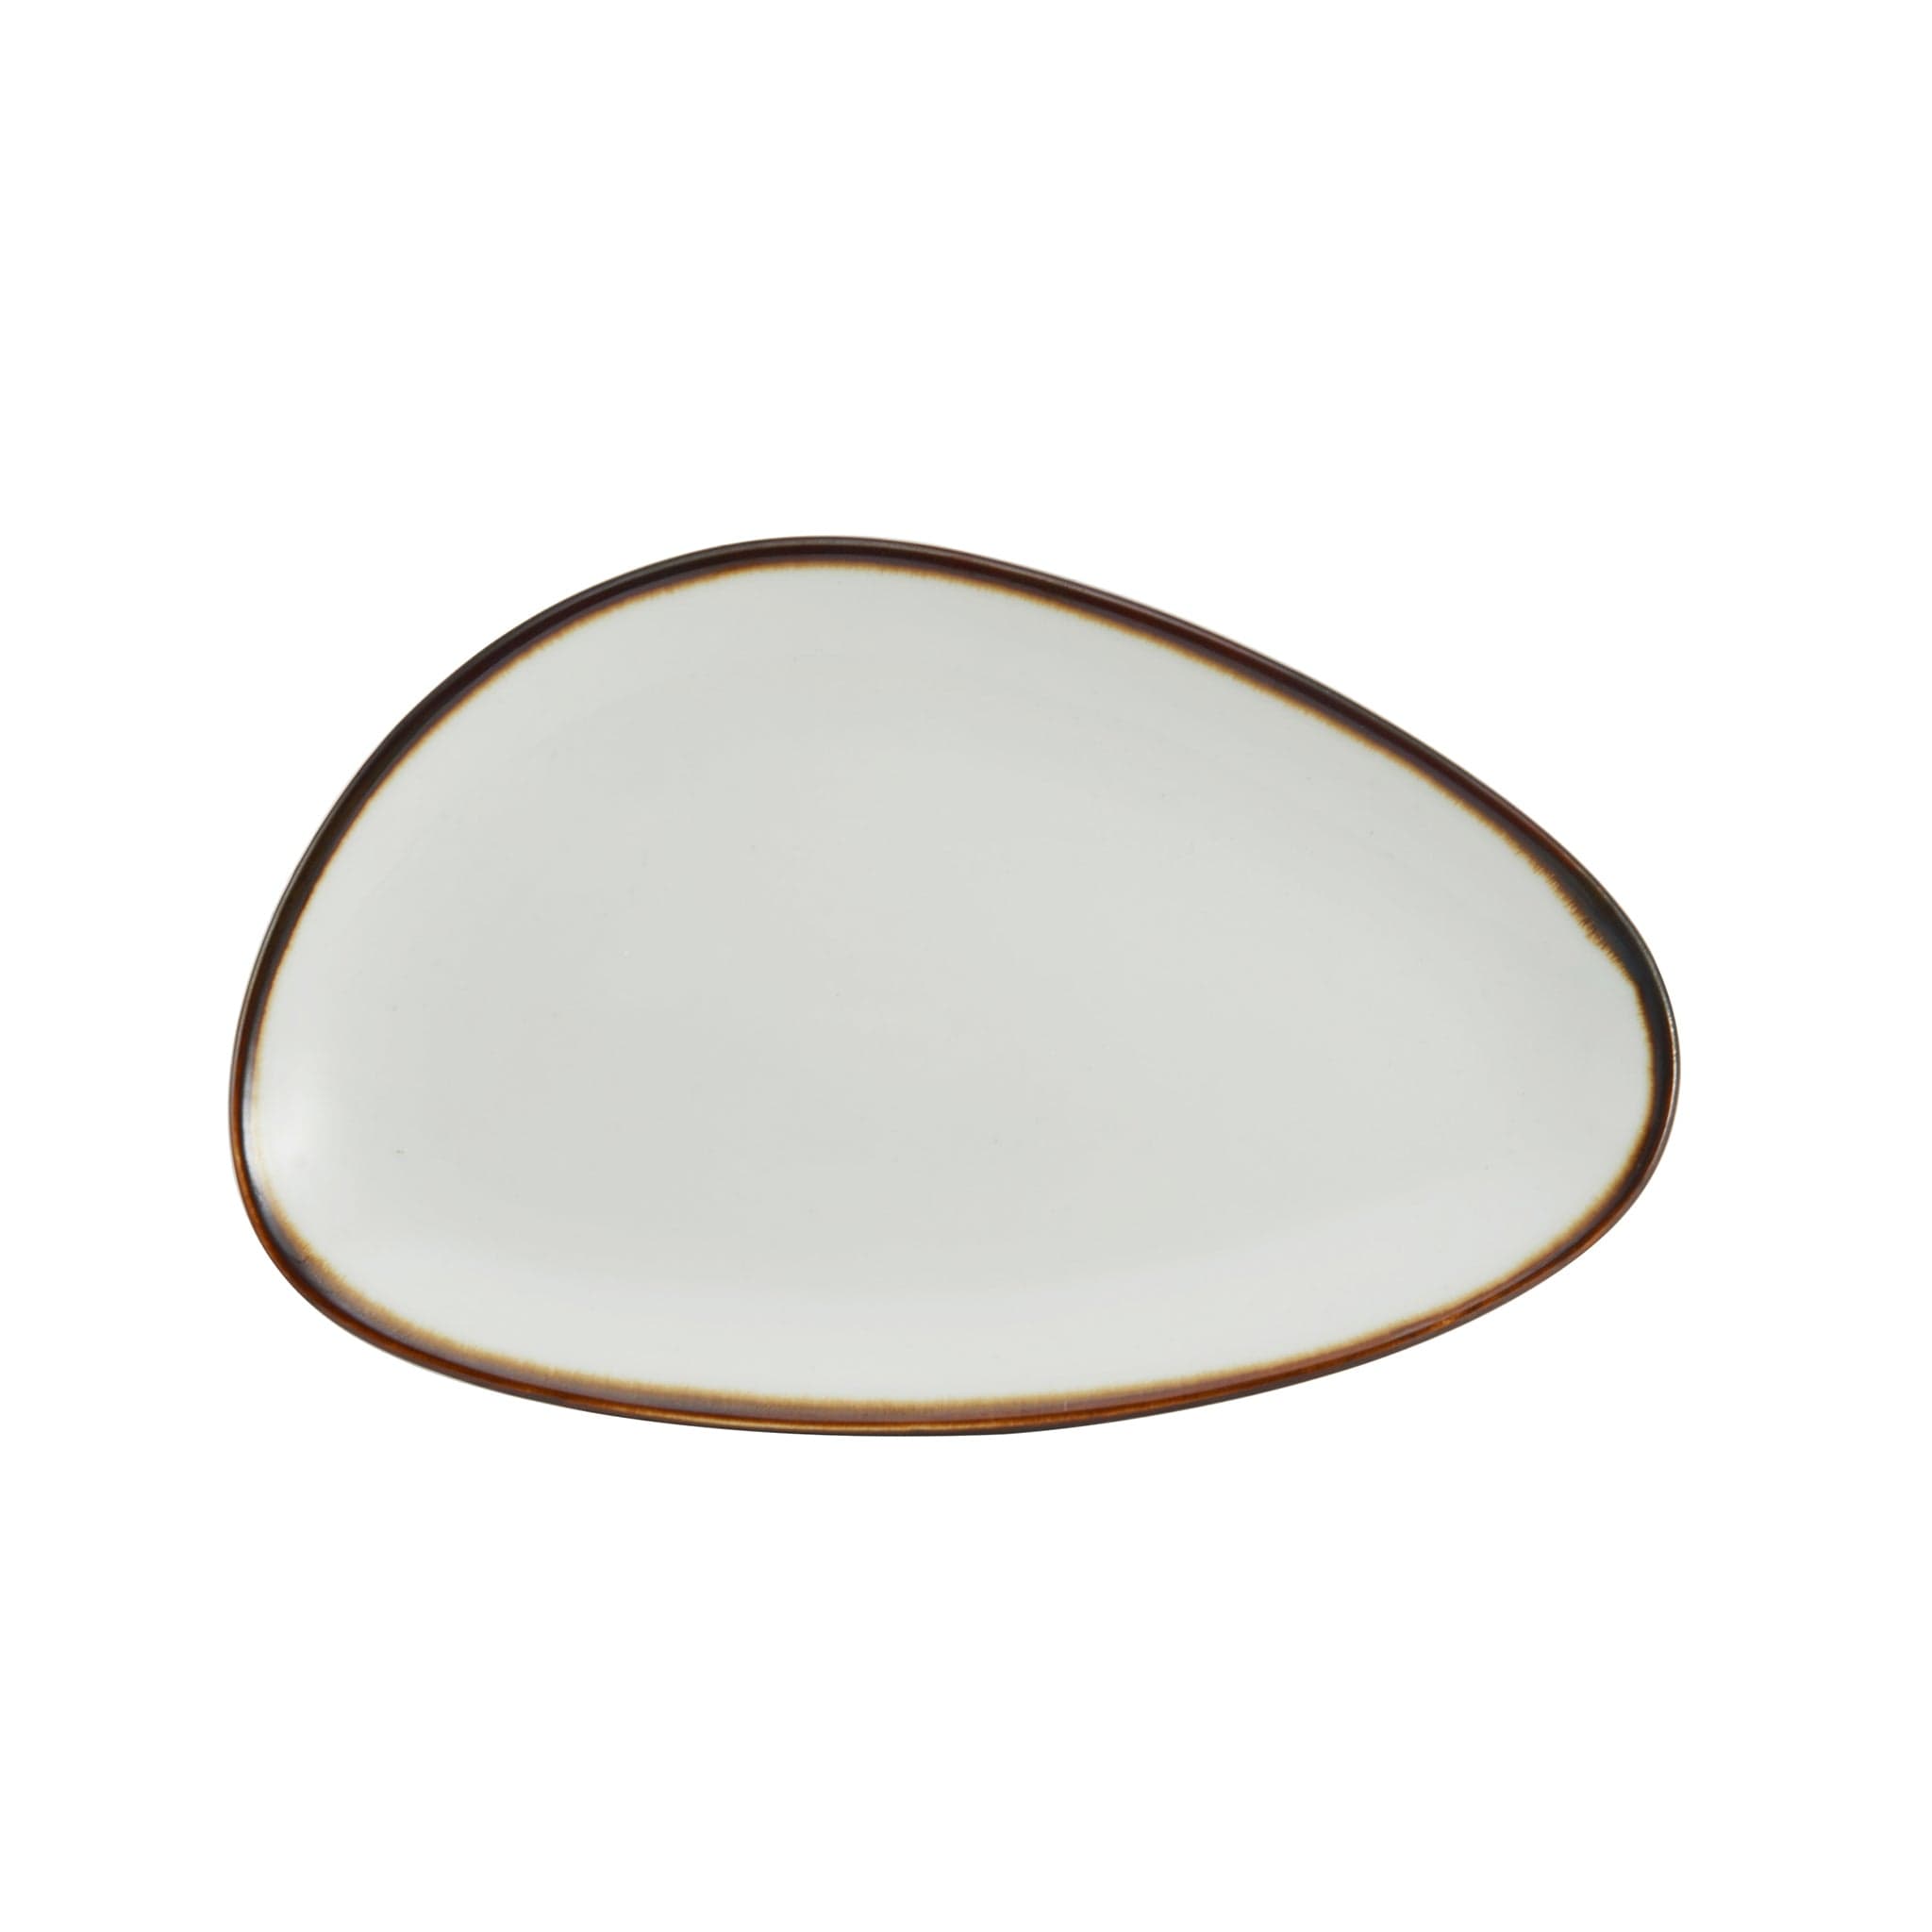 Lodge Porcelain Platter 9x5" Cream White